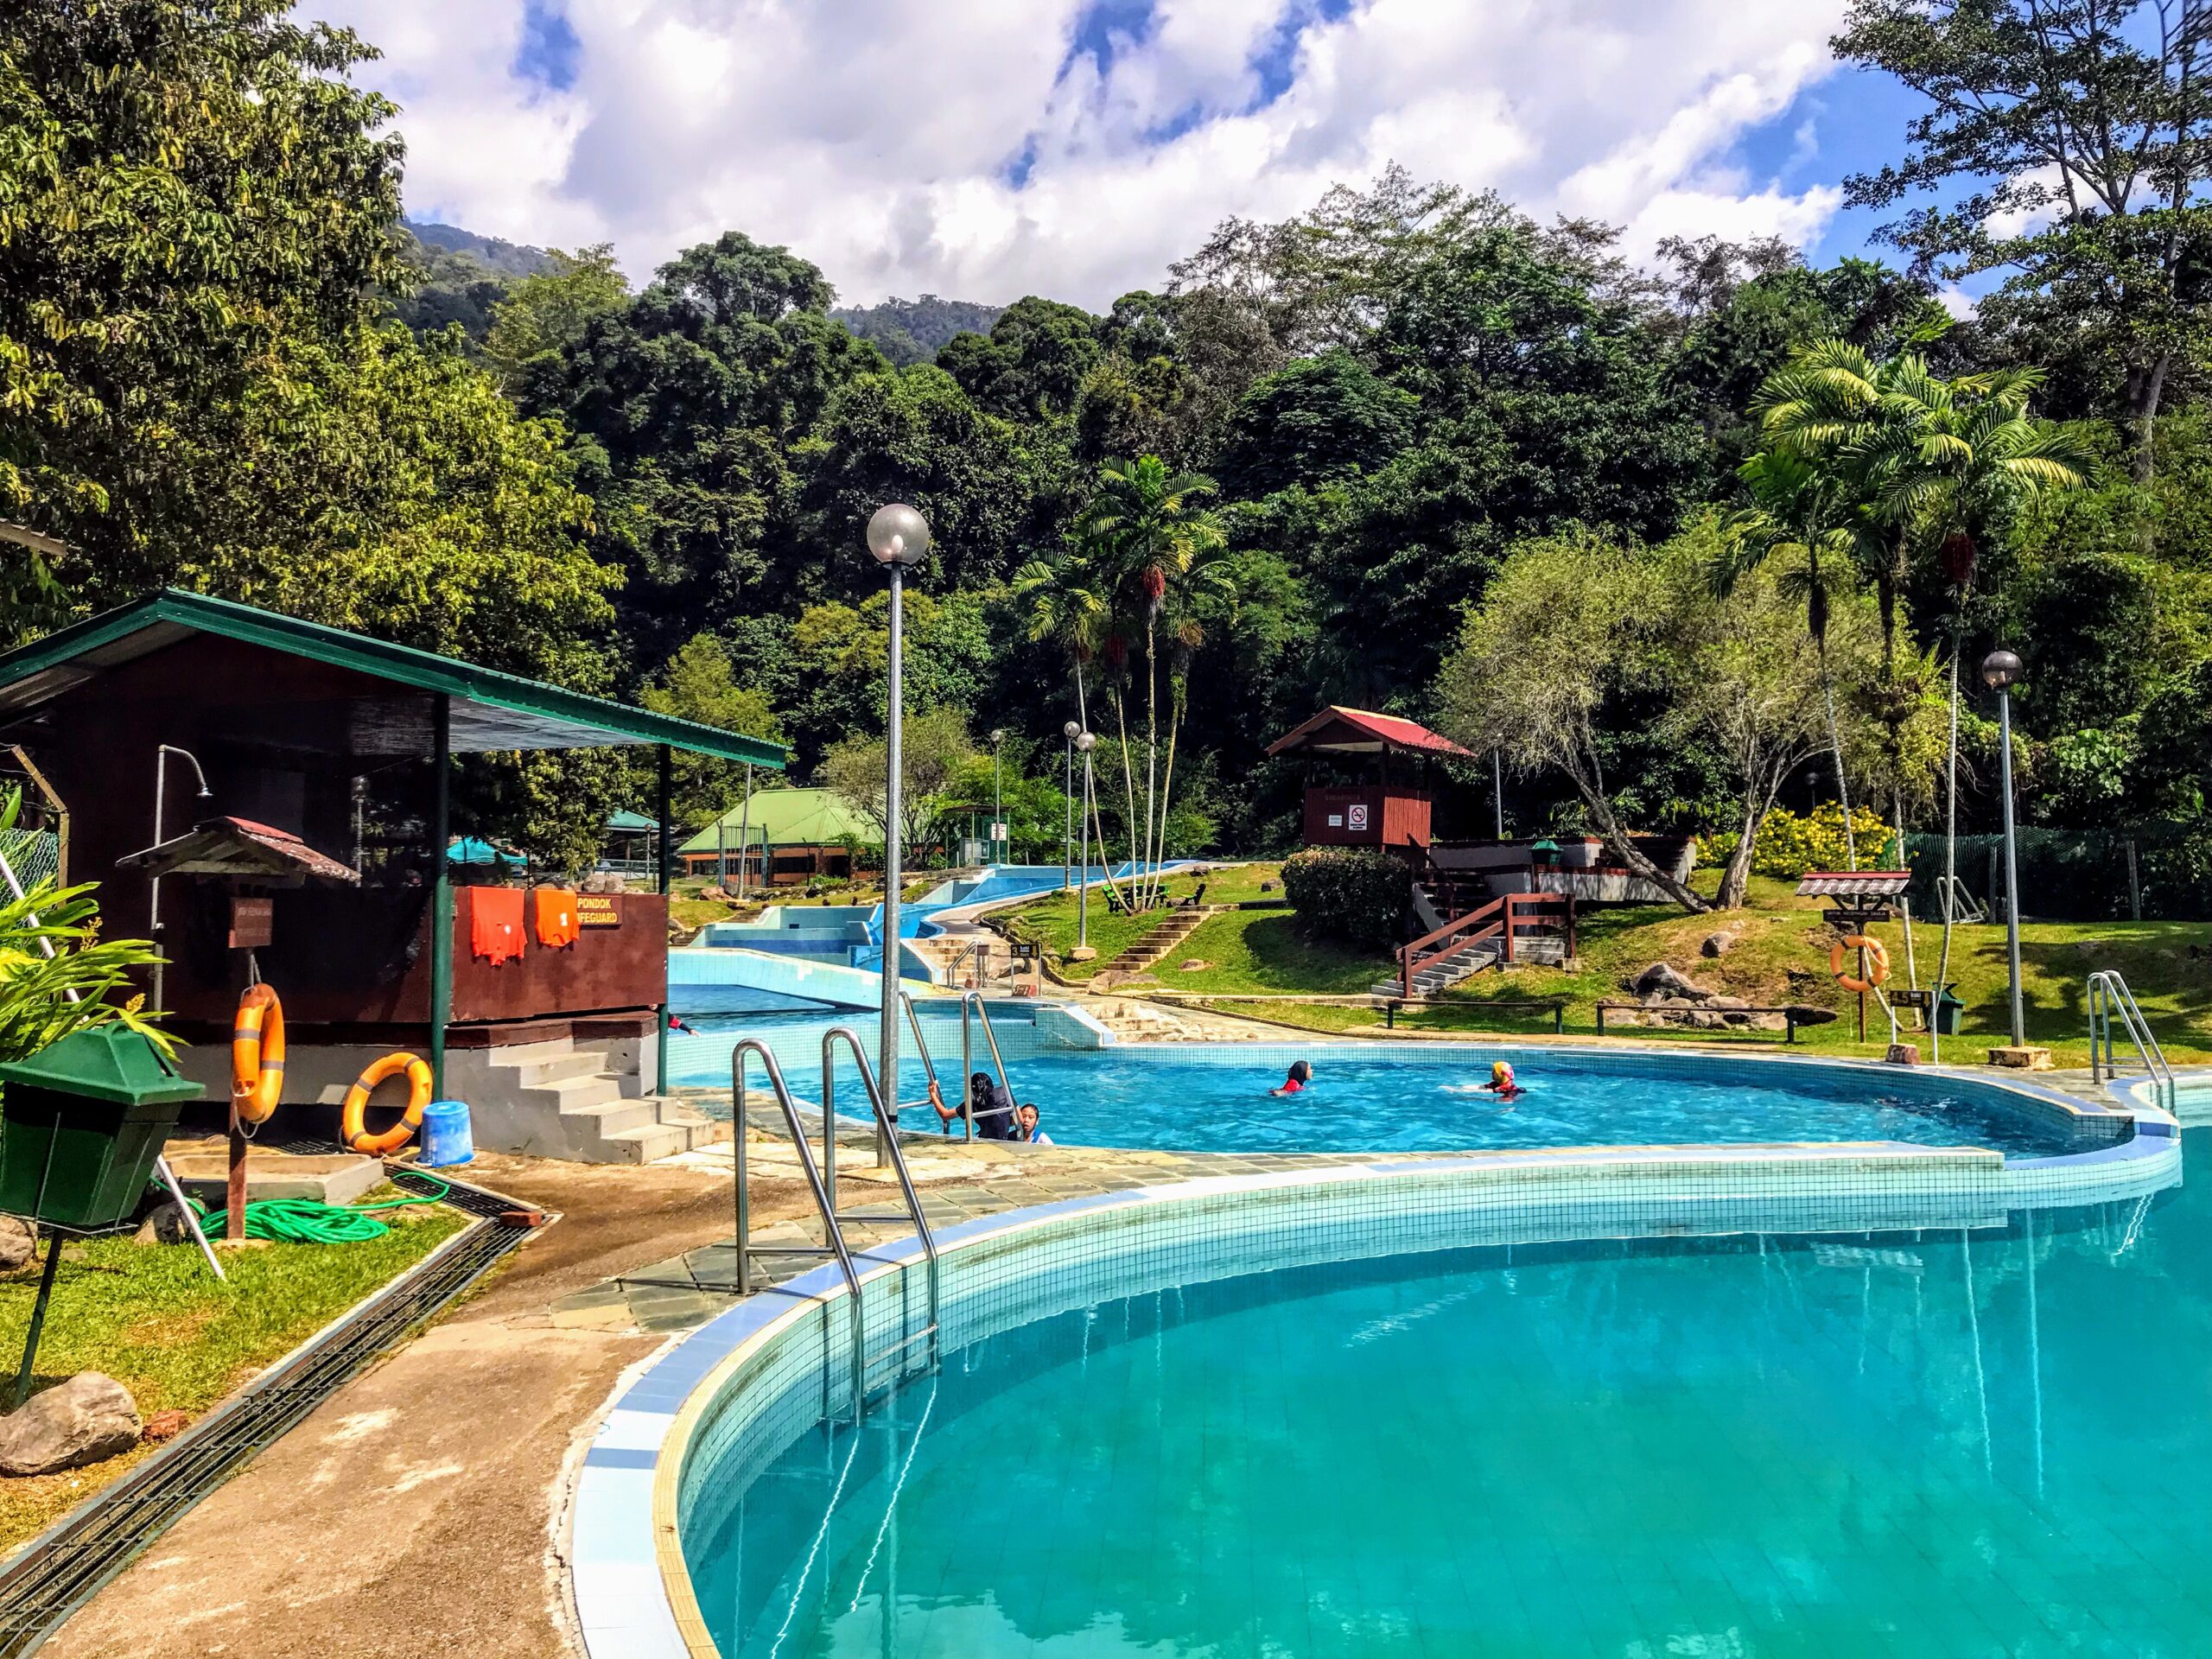 kinabalu park & poring hot spring tour